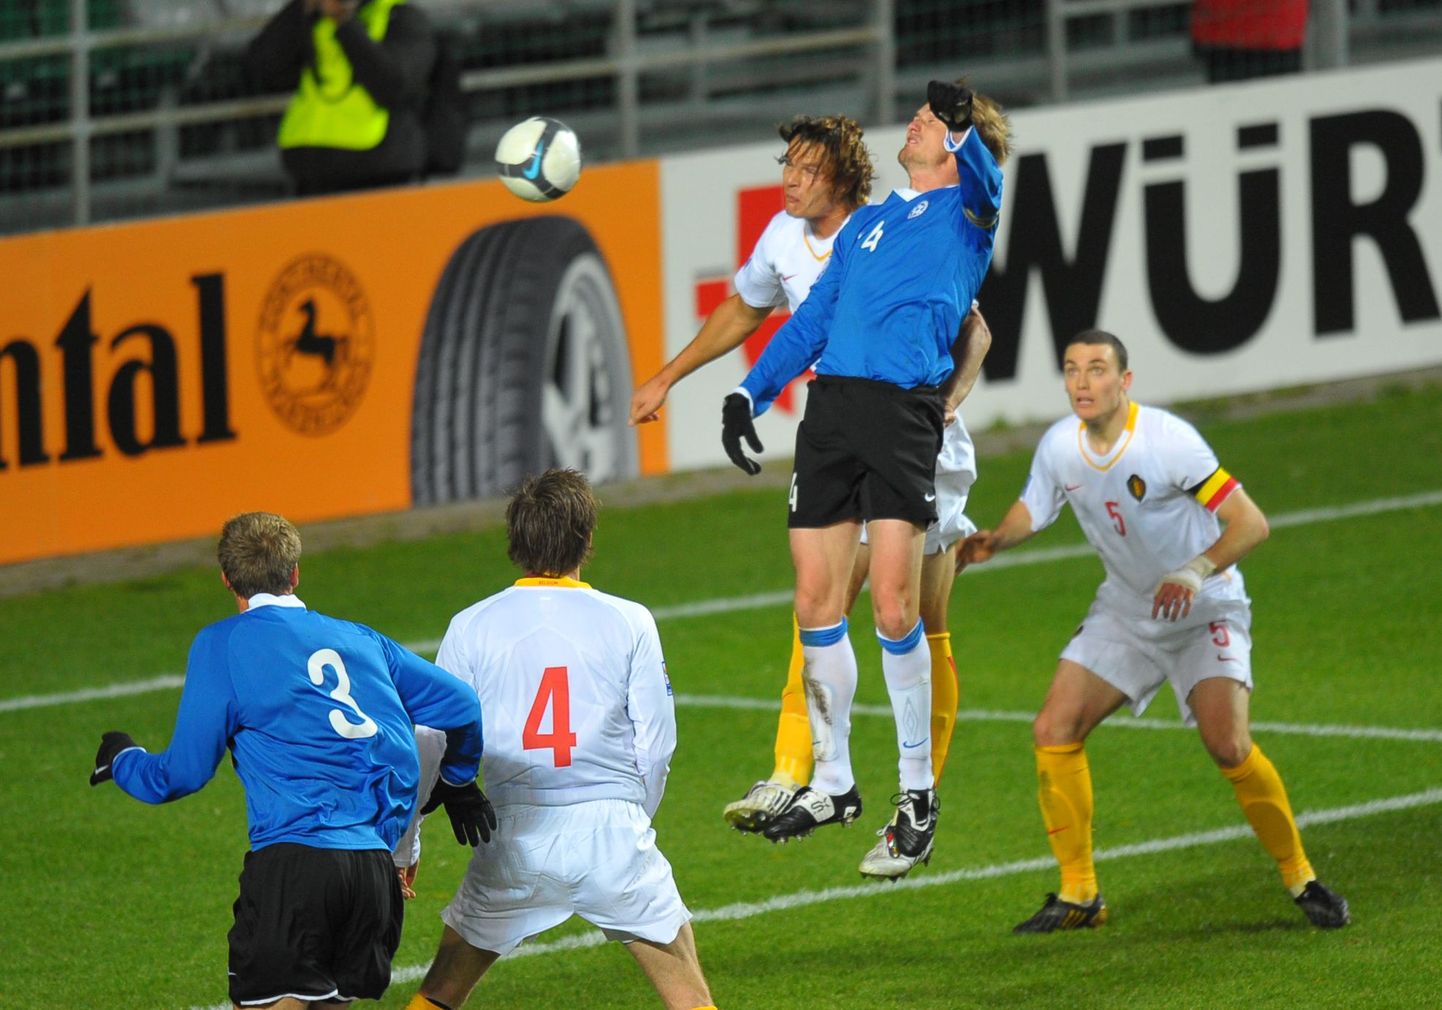 Момент одного из матчей сборной Эстонии (игроки в синих футболках).